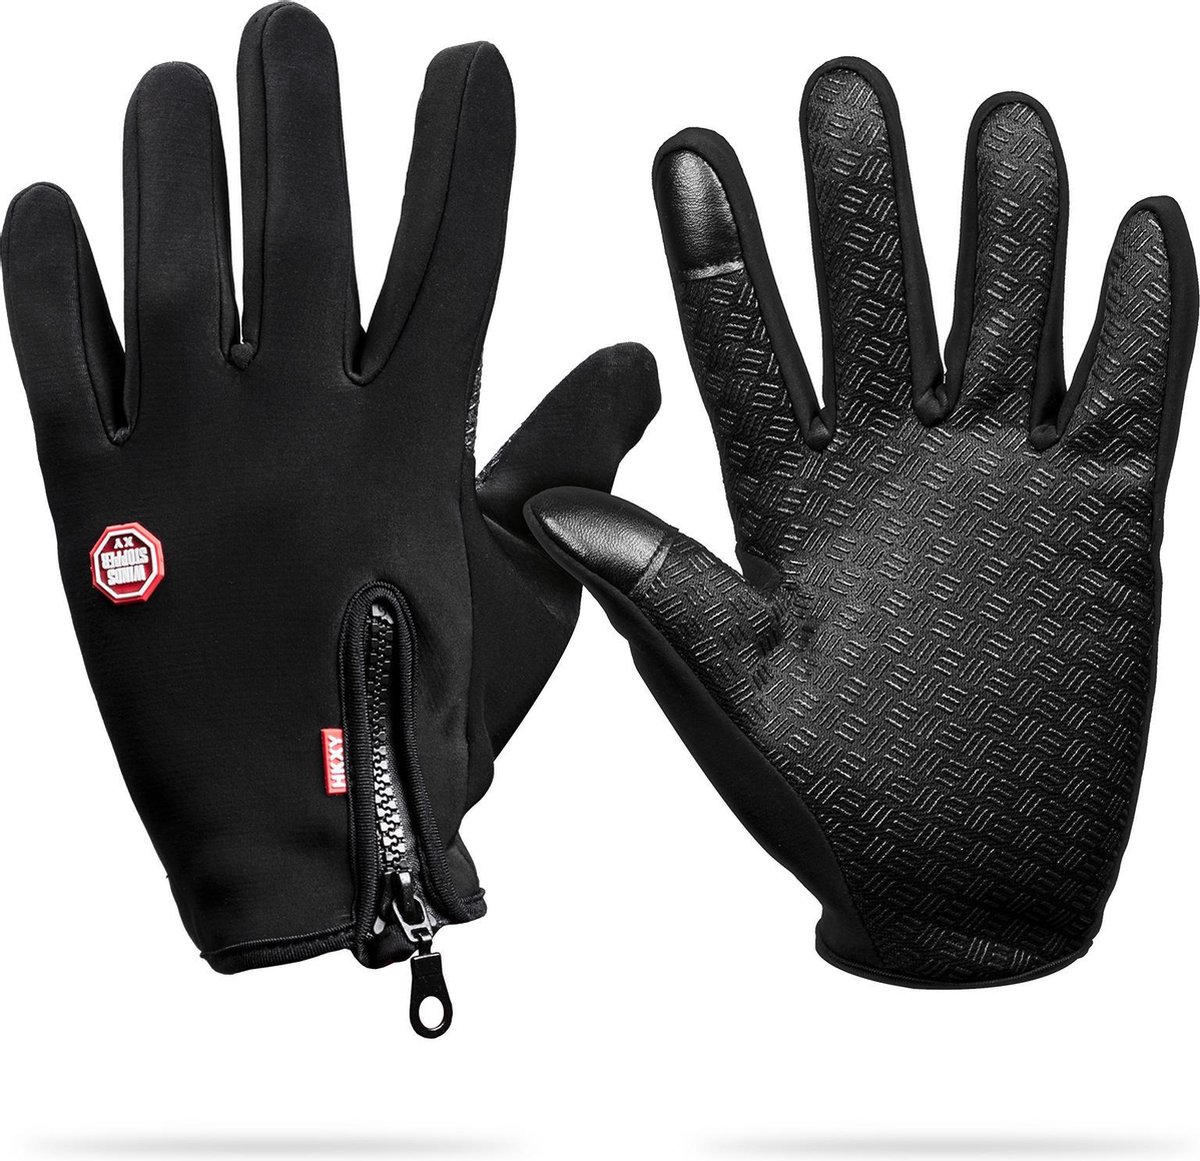 Waterafstotend & Windproof Thermische Touchscreen Handschoenen I Zwart I SMALL - Merkloos